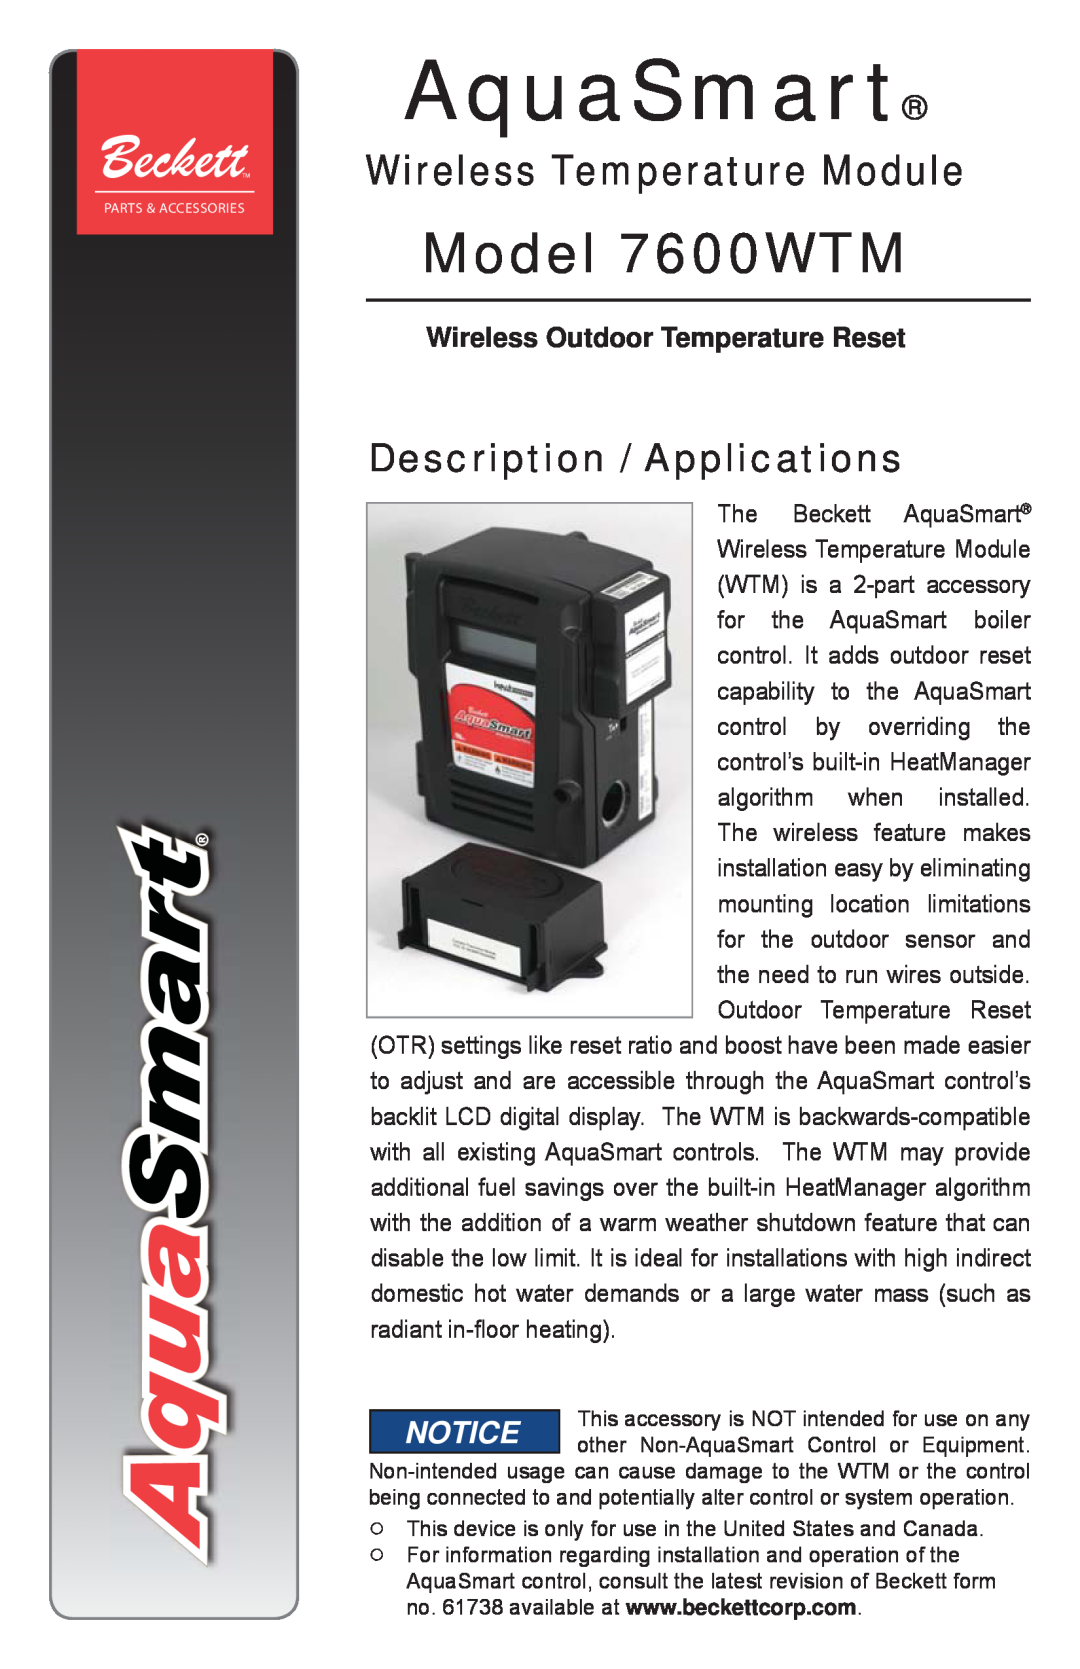 Beckett manual Description / Applications, Wireless Outdoor Temperature Reset, AquaSmart, Model 7600WTM 